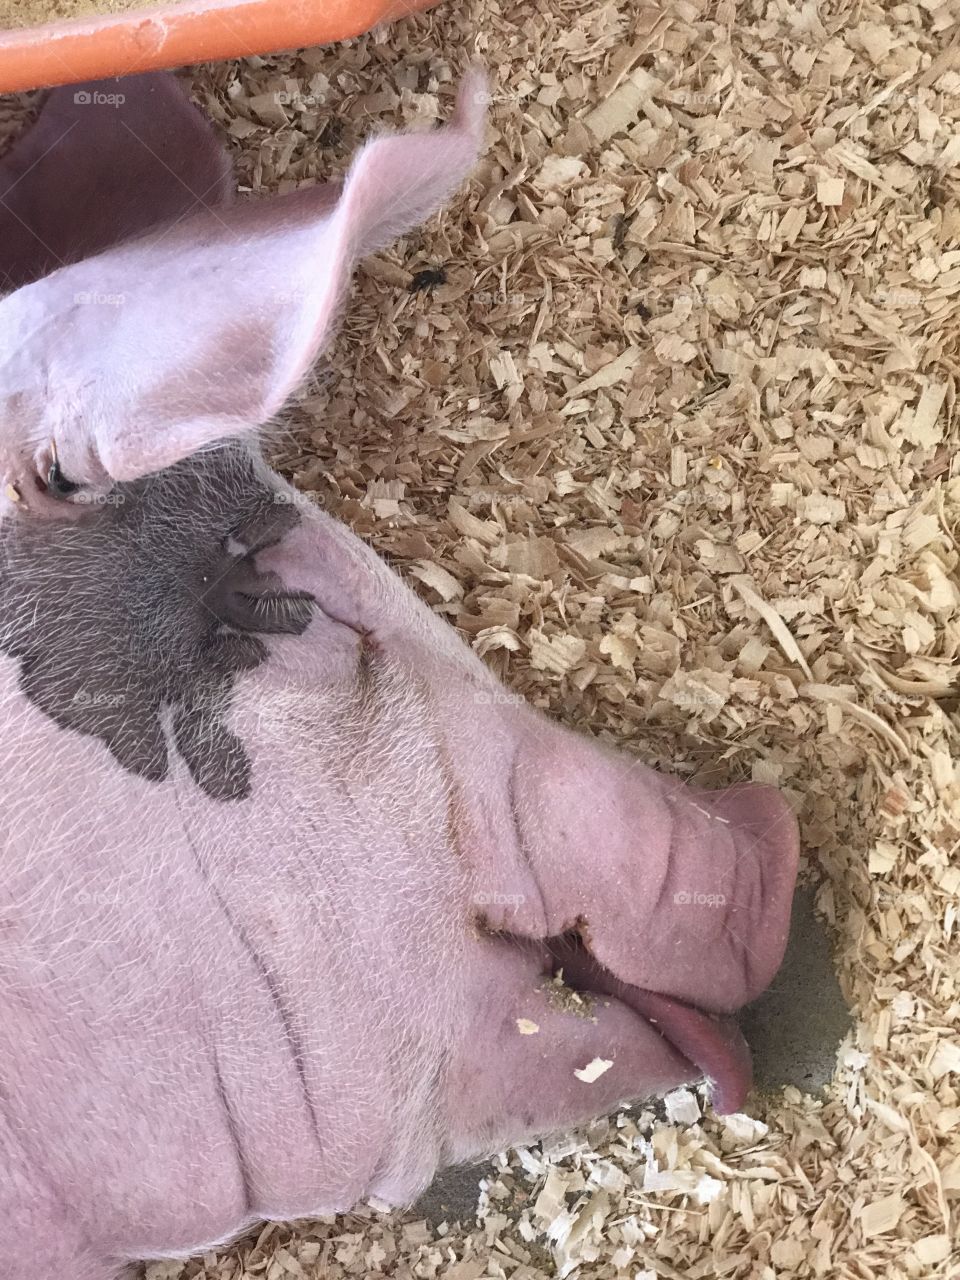 Sleepy pig at the fair